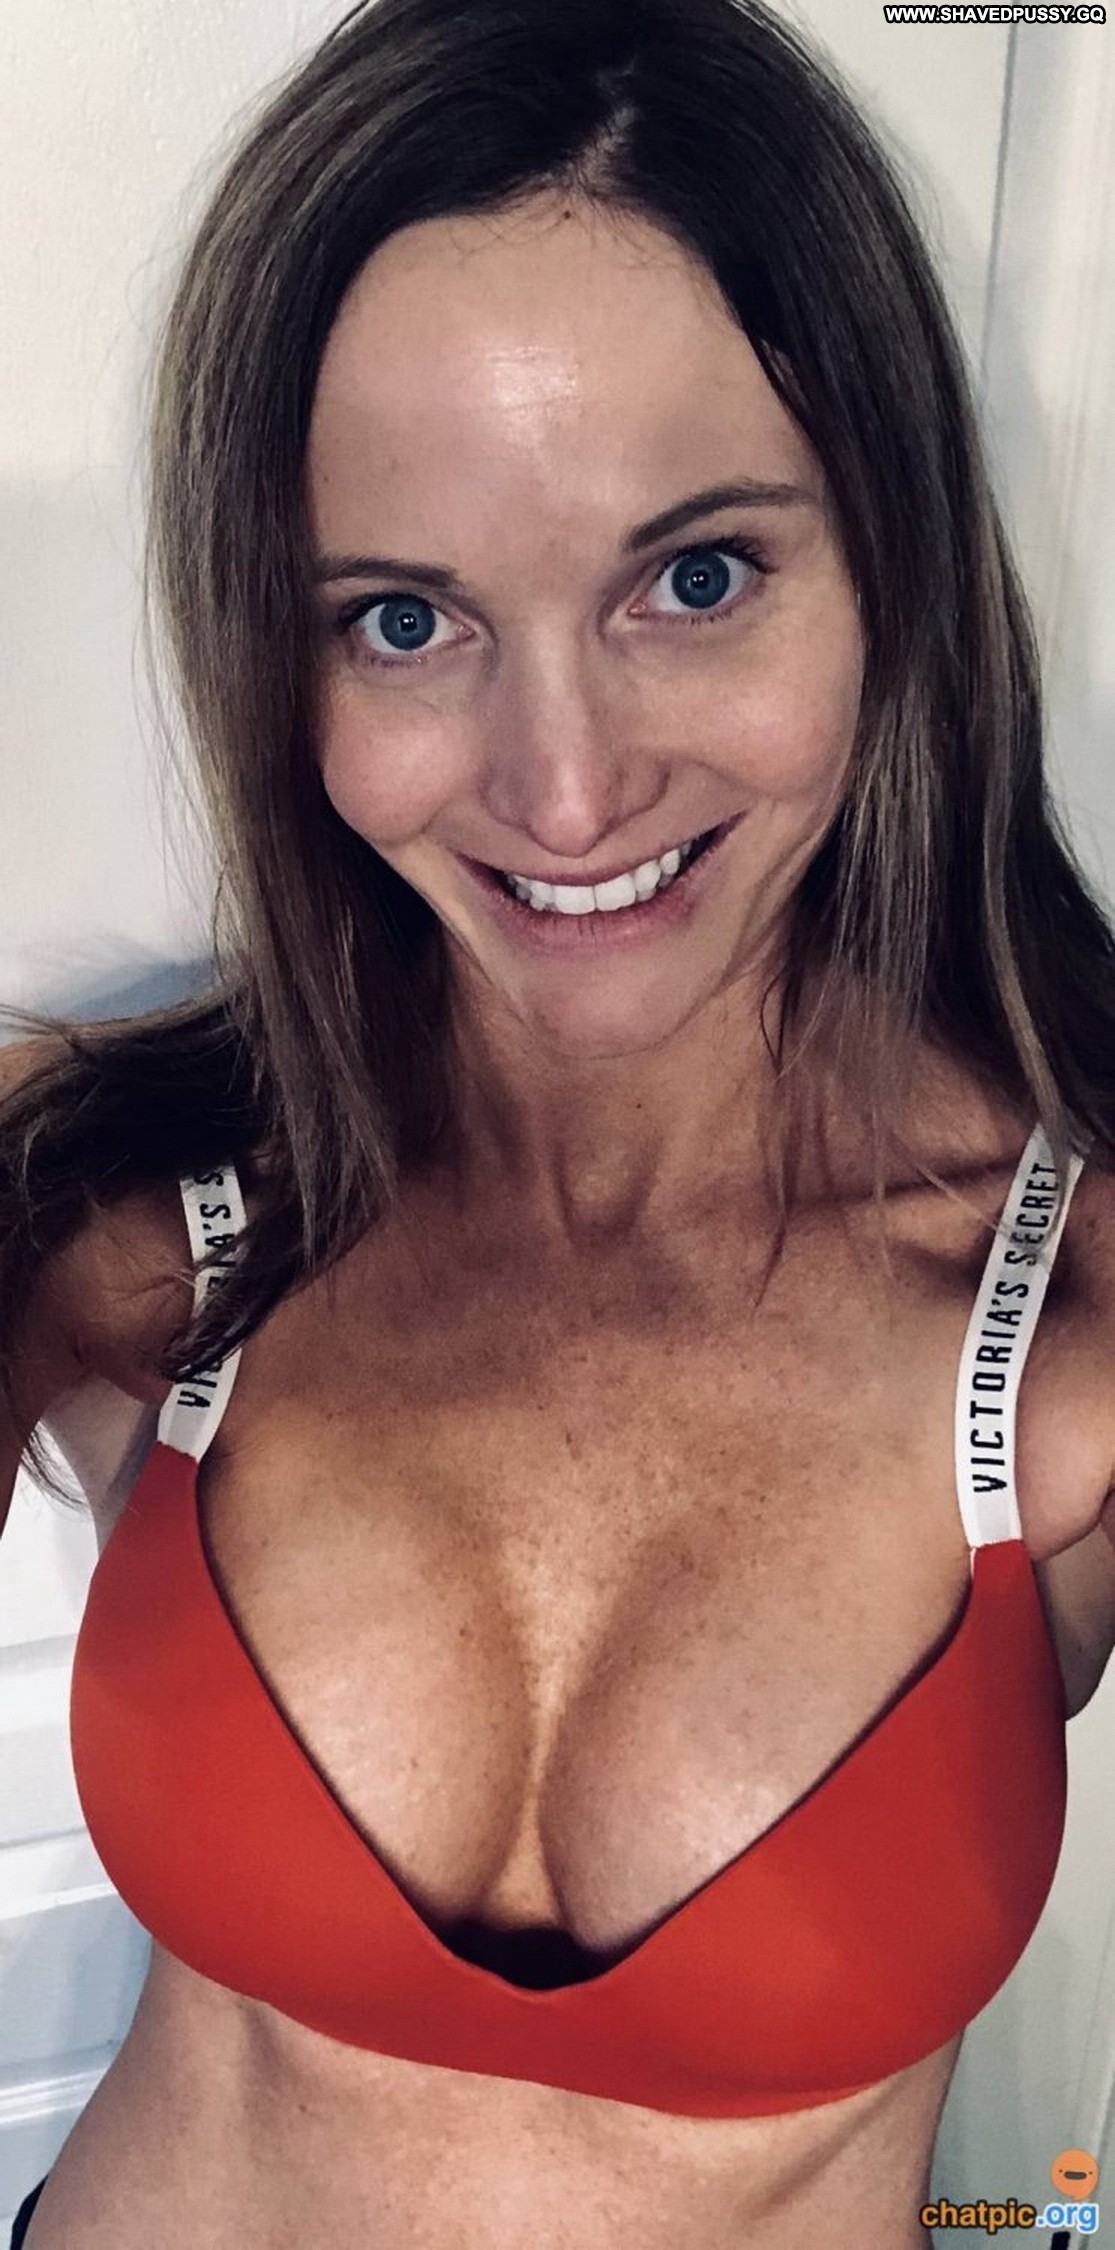 Francine Straight Slender Nude Redhead Selfies Nude Teen Peeping pic